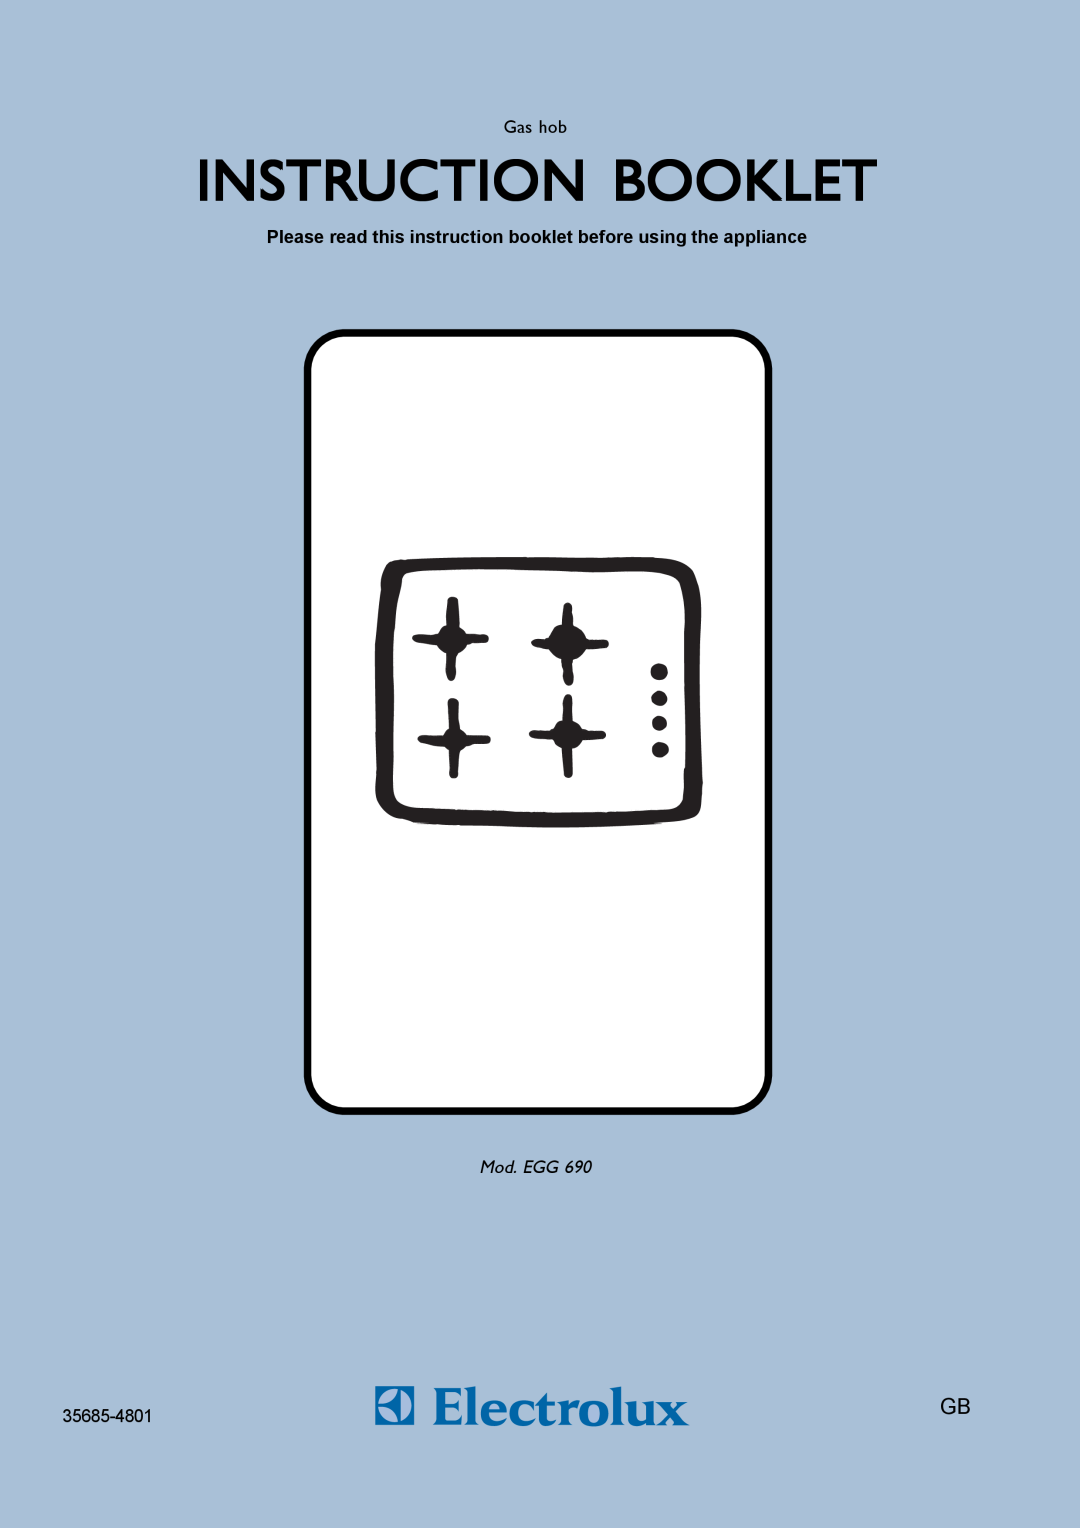 Electrolux EGG 690 manual Instruction Booklet, Mod. EGG 